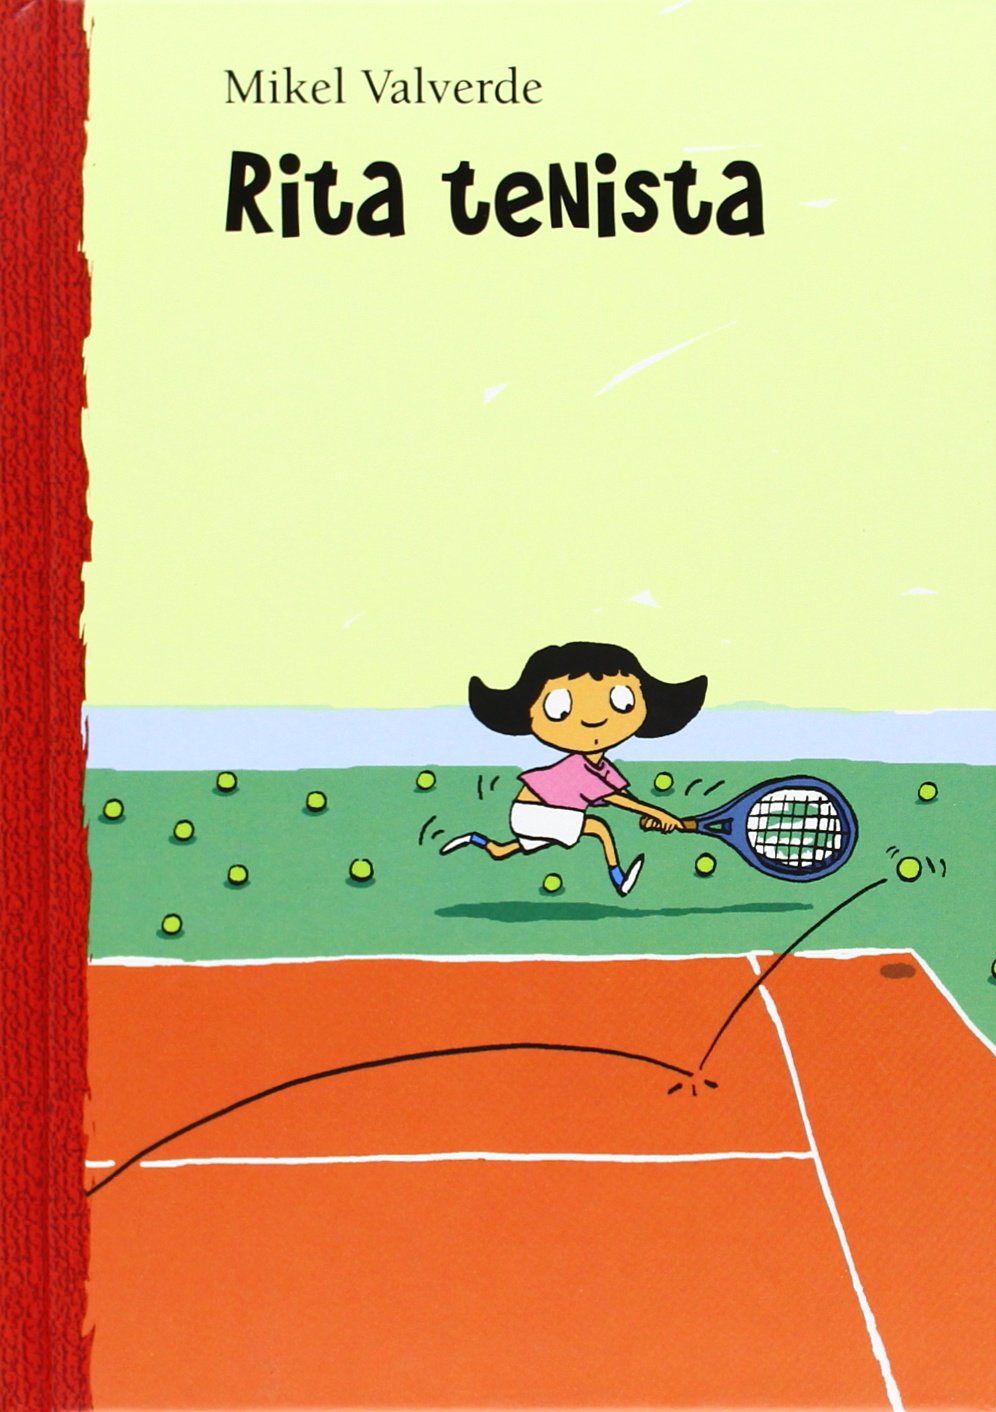 Libro: Rita Tenista por Mikel Valverde